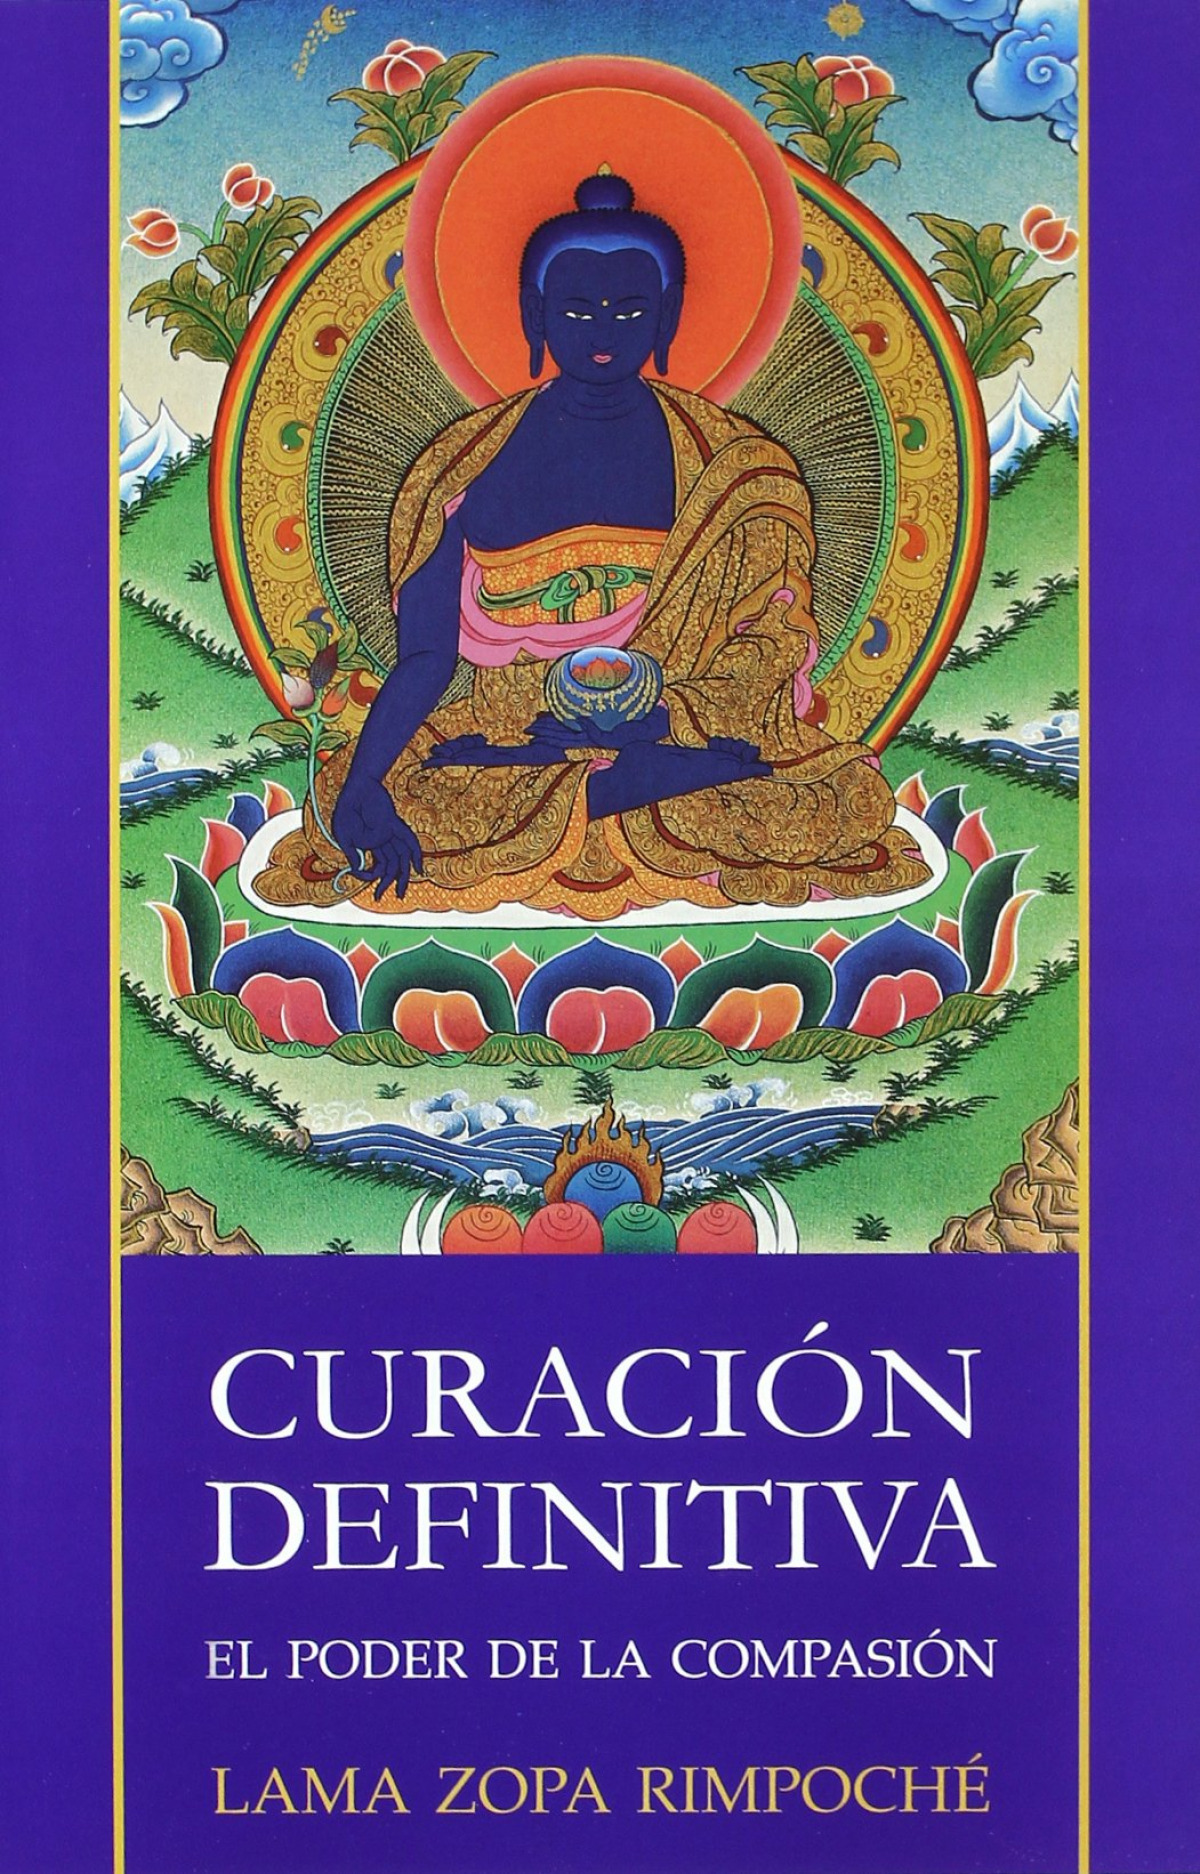 Curacion definitiva:el poder de la compasion - Zopa Rimpoche, Lama